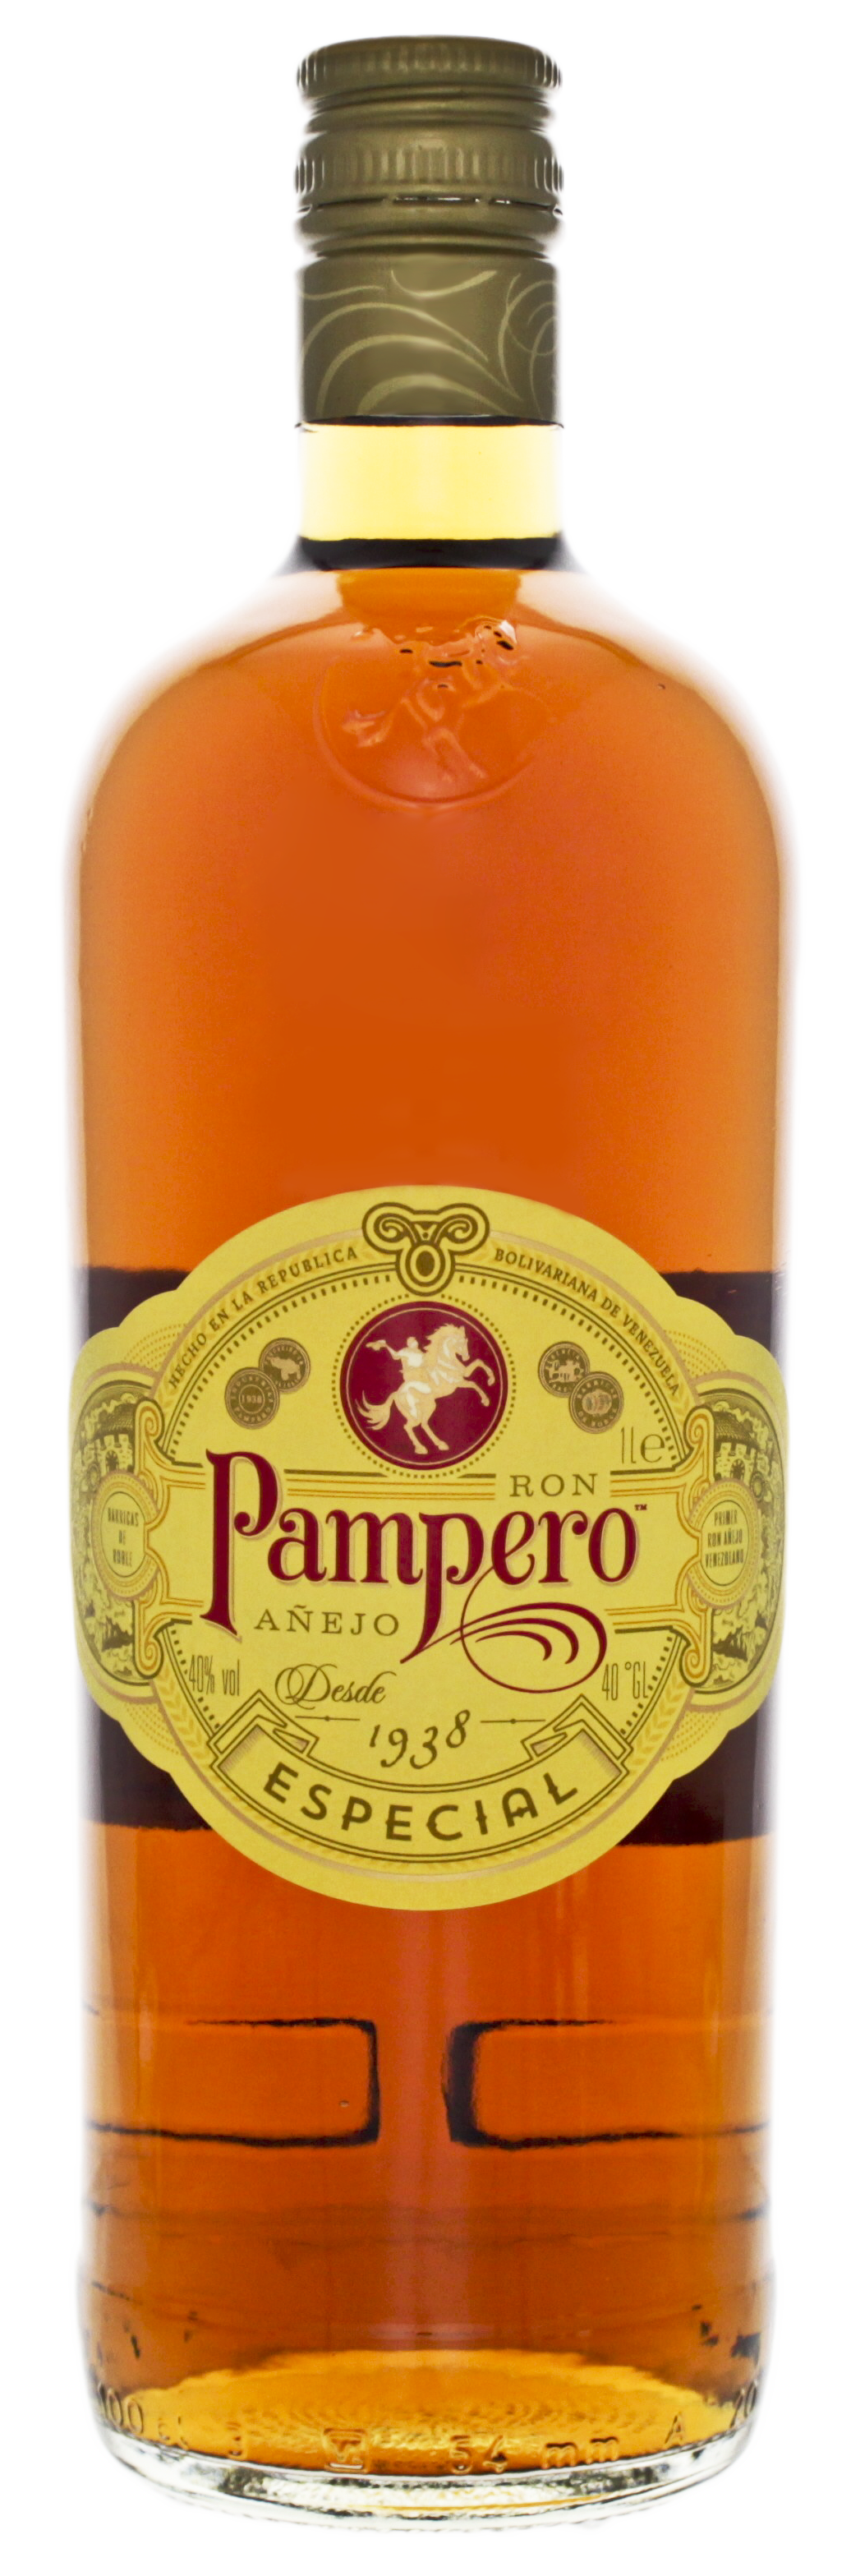 Pampero Rum Especial kaufen! Anejo Rum Online günstig - Spirituosen Shop